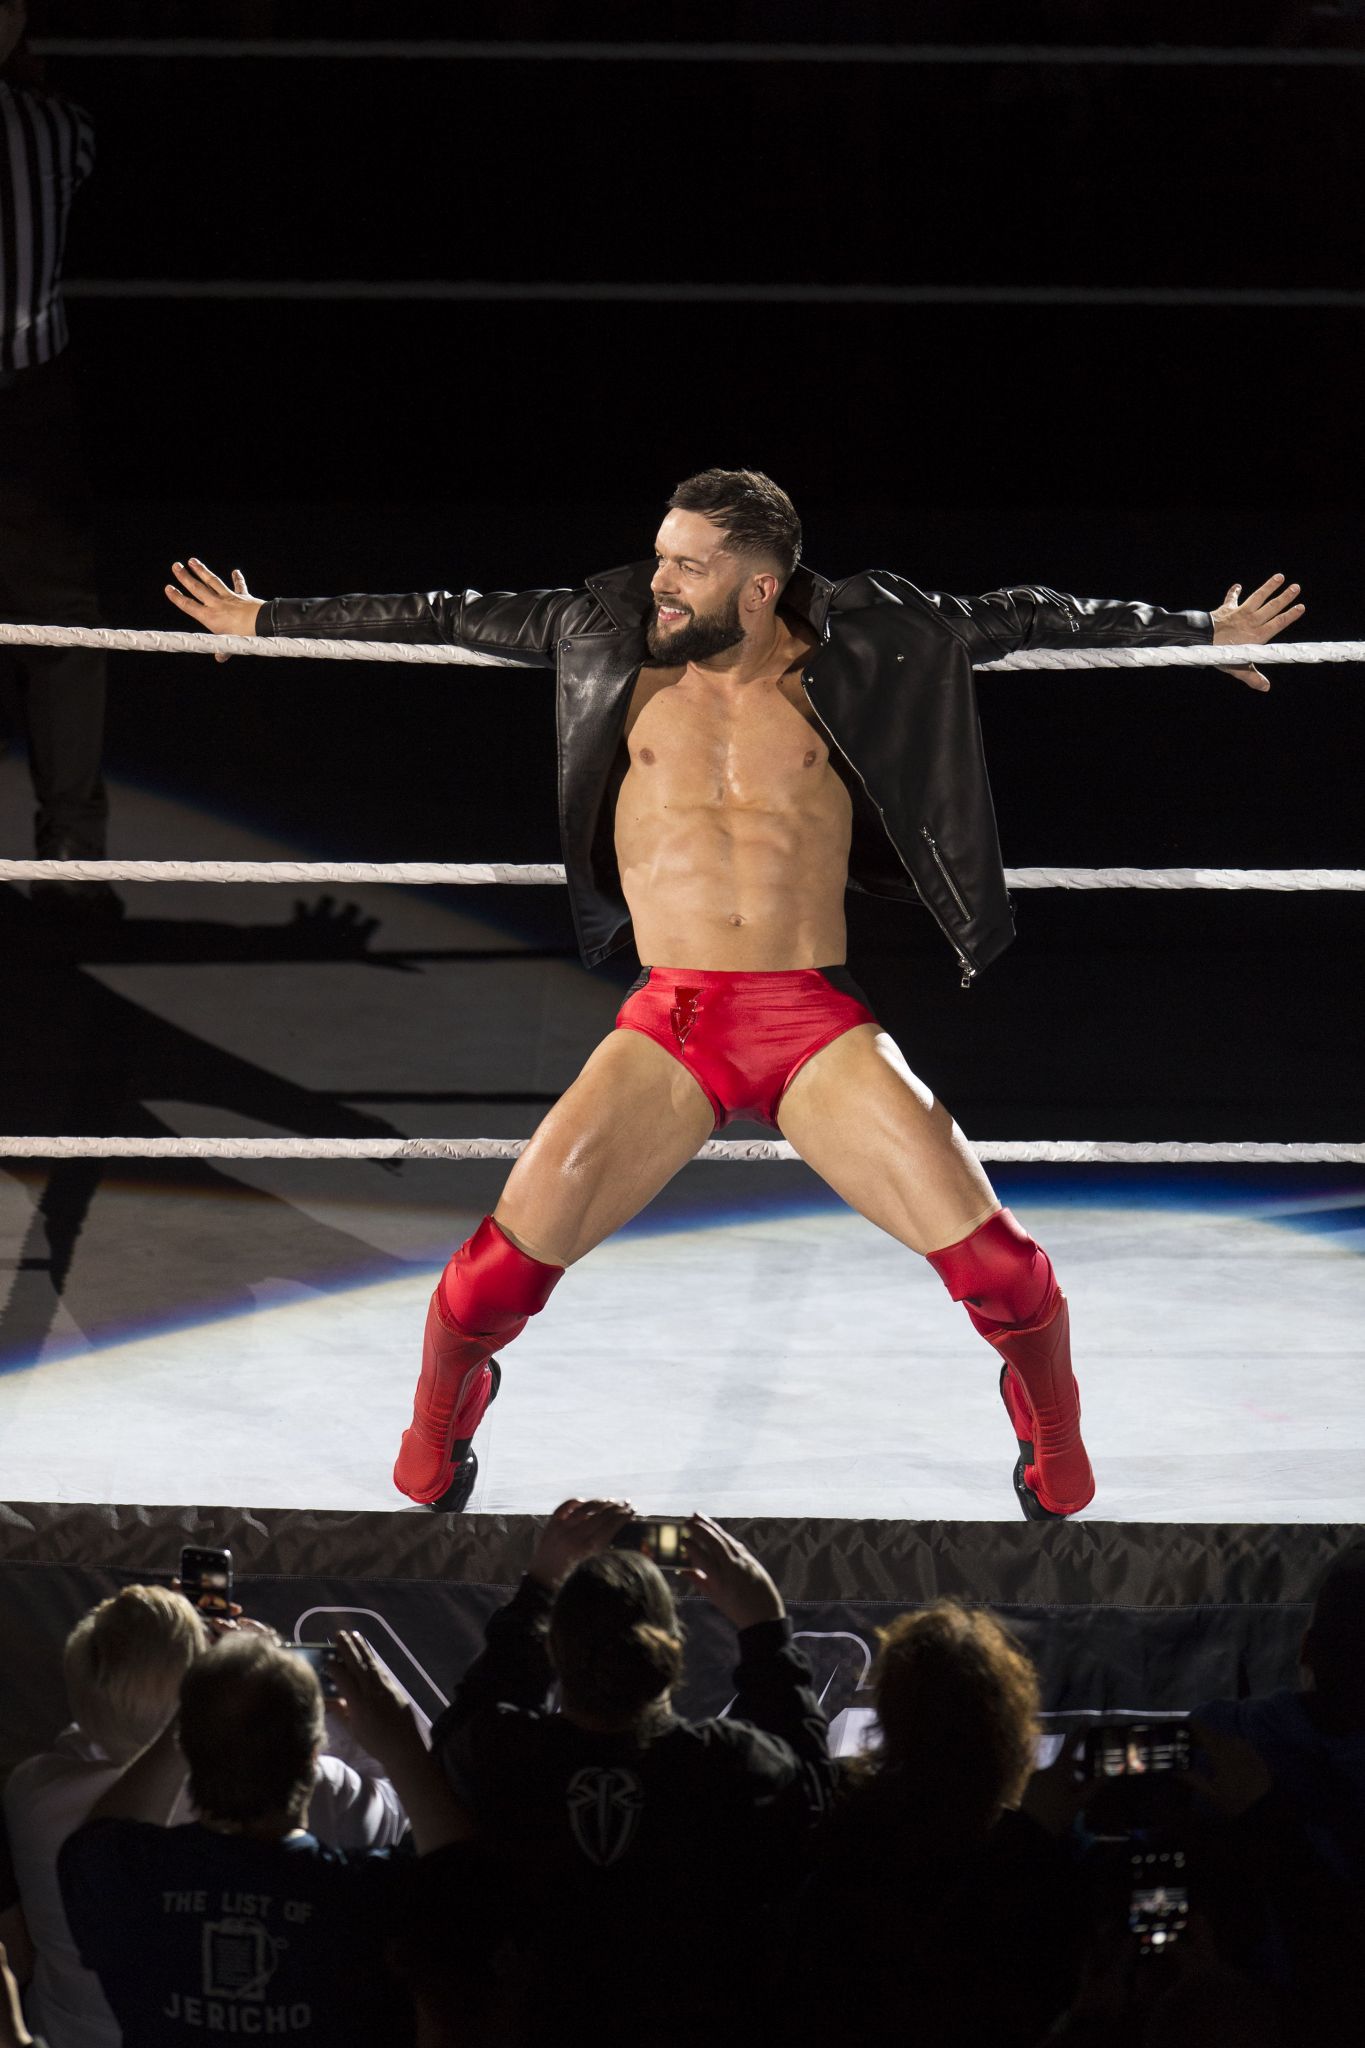 WWE superstar Finn Balor booked for San Antonio's Celebrity Fan Fest